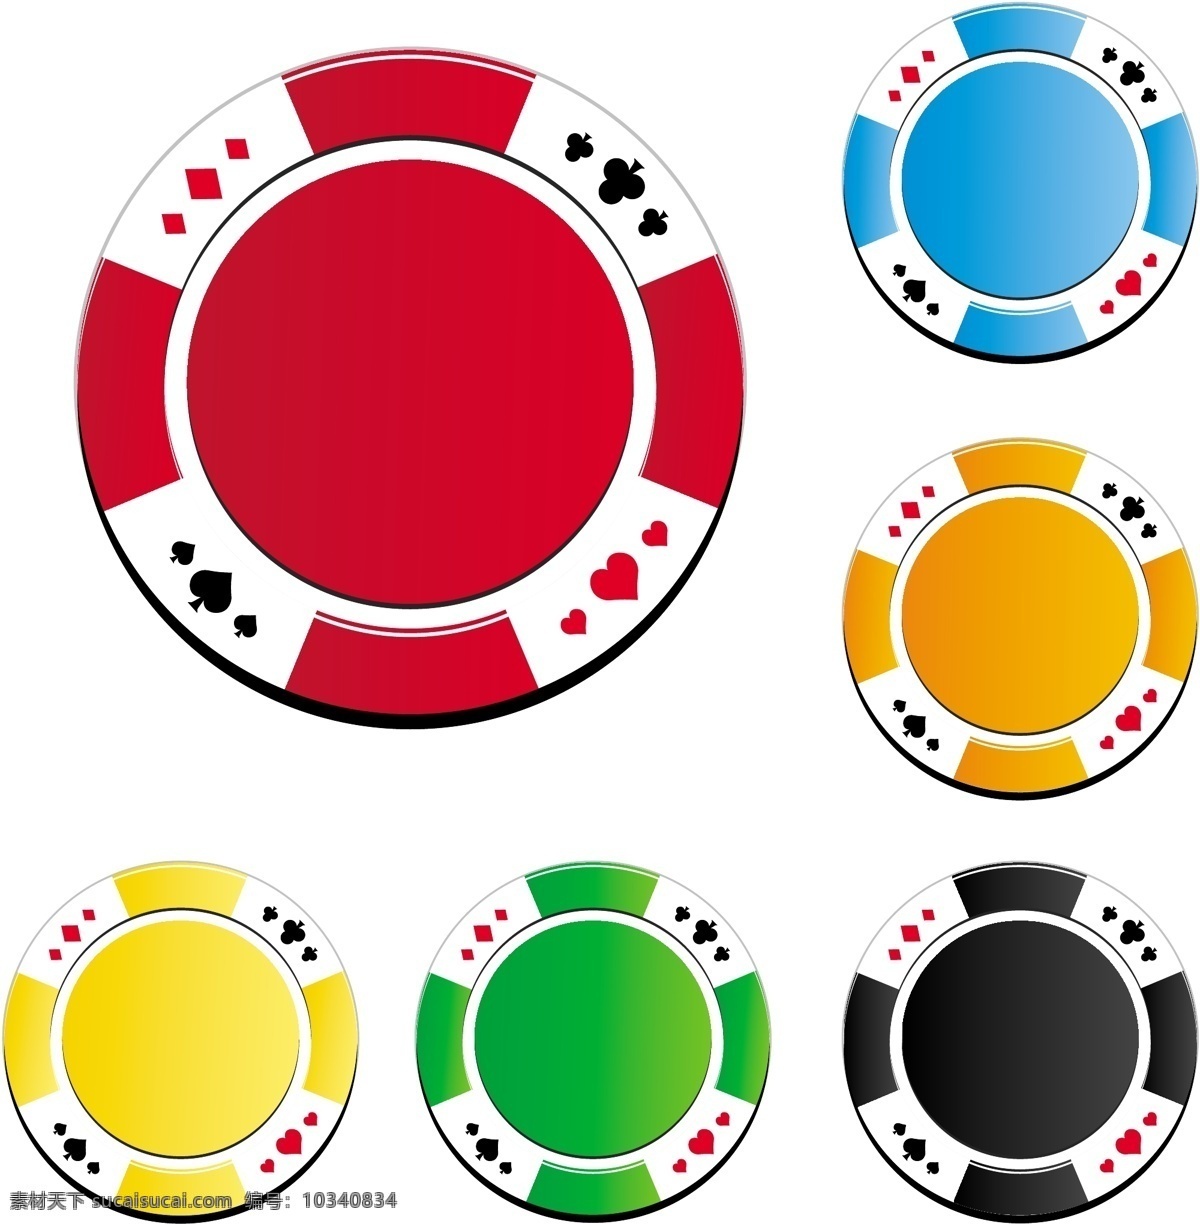 筹码图标 筹码 赌场 赌博 博彩 海报背景 影音娱乐 生活百科 矢量素材 白色